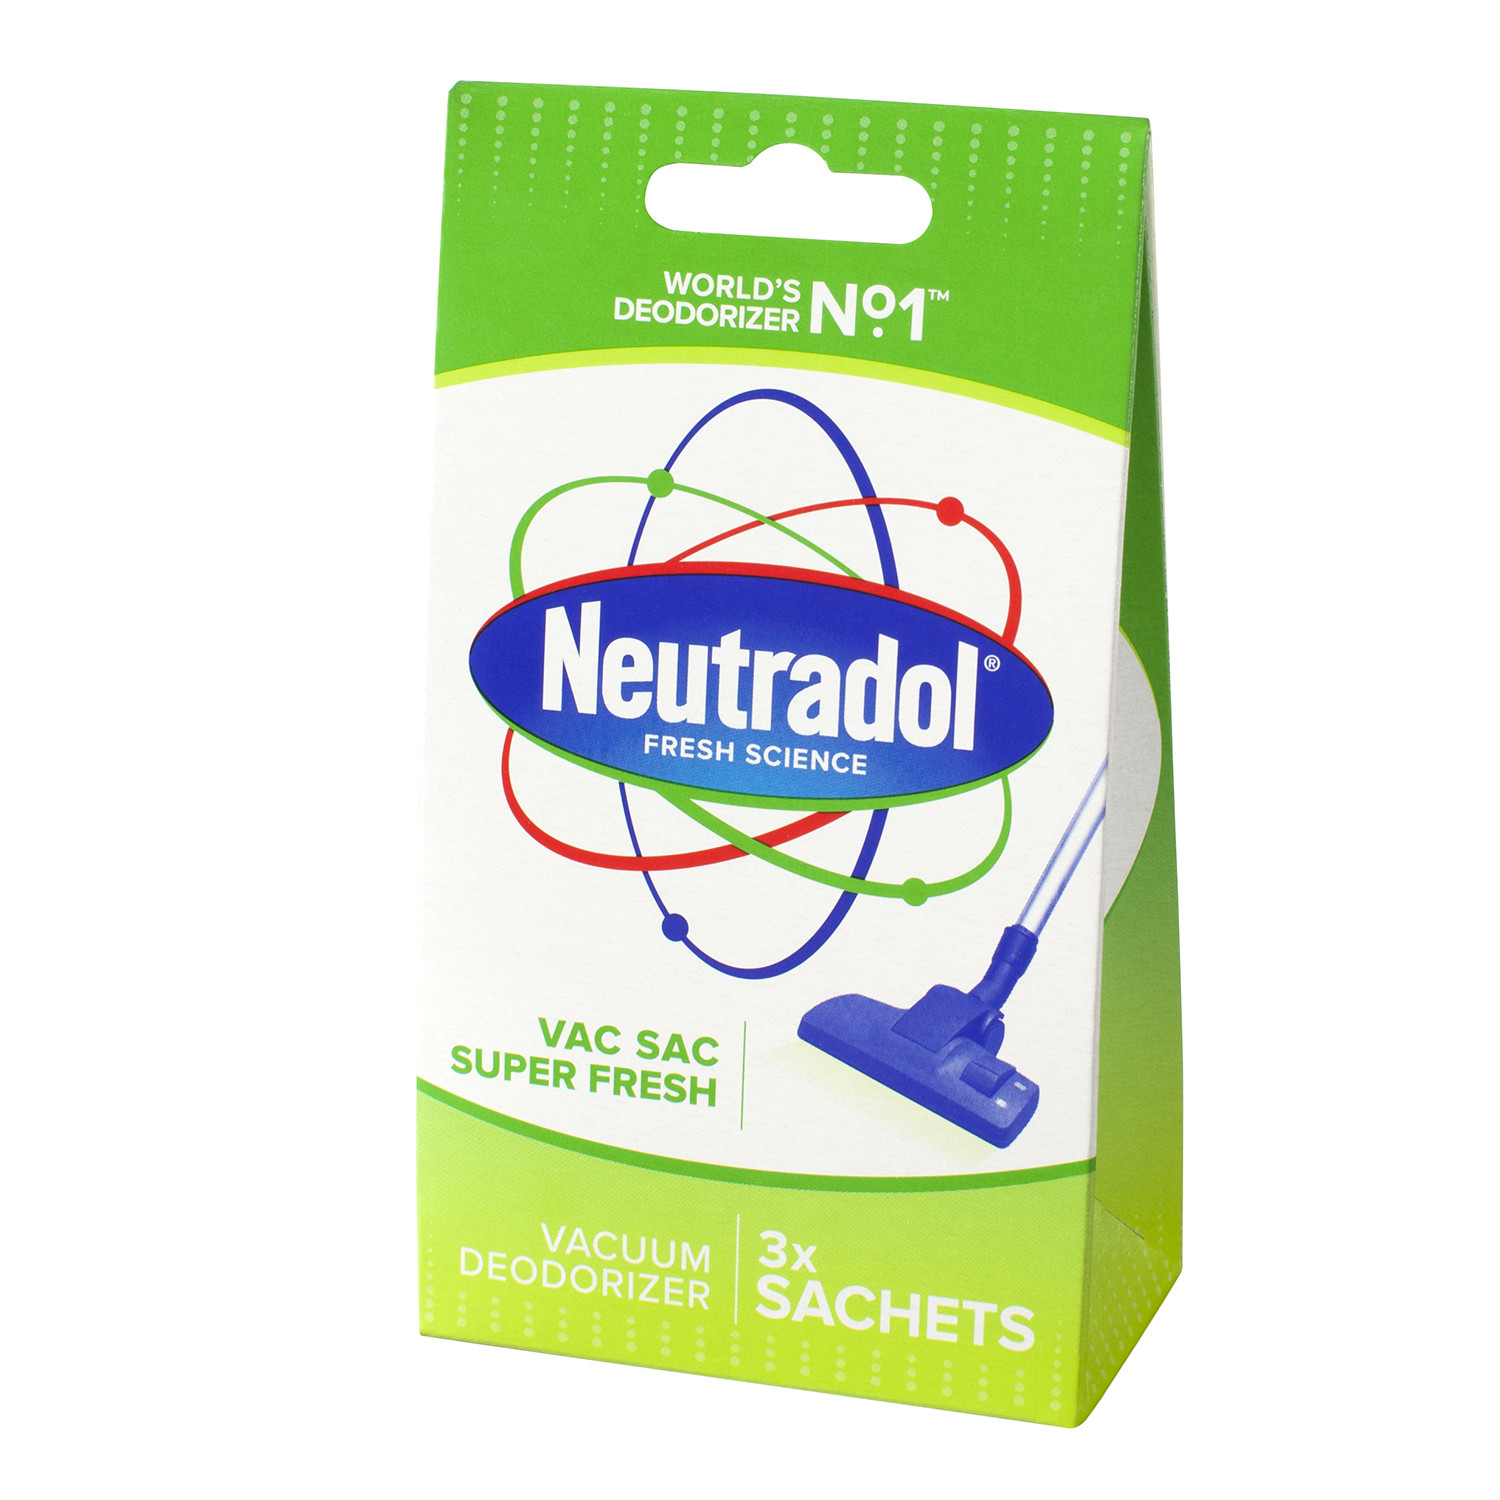 Neutradol Vacuum Sac Deodorizer 3 Pack Image 2